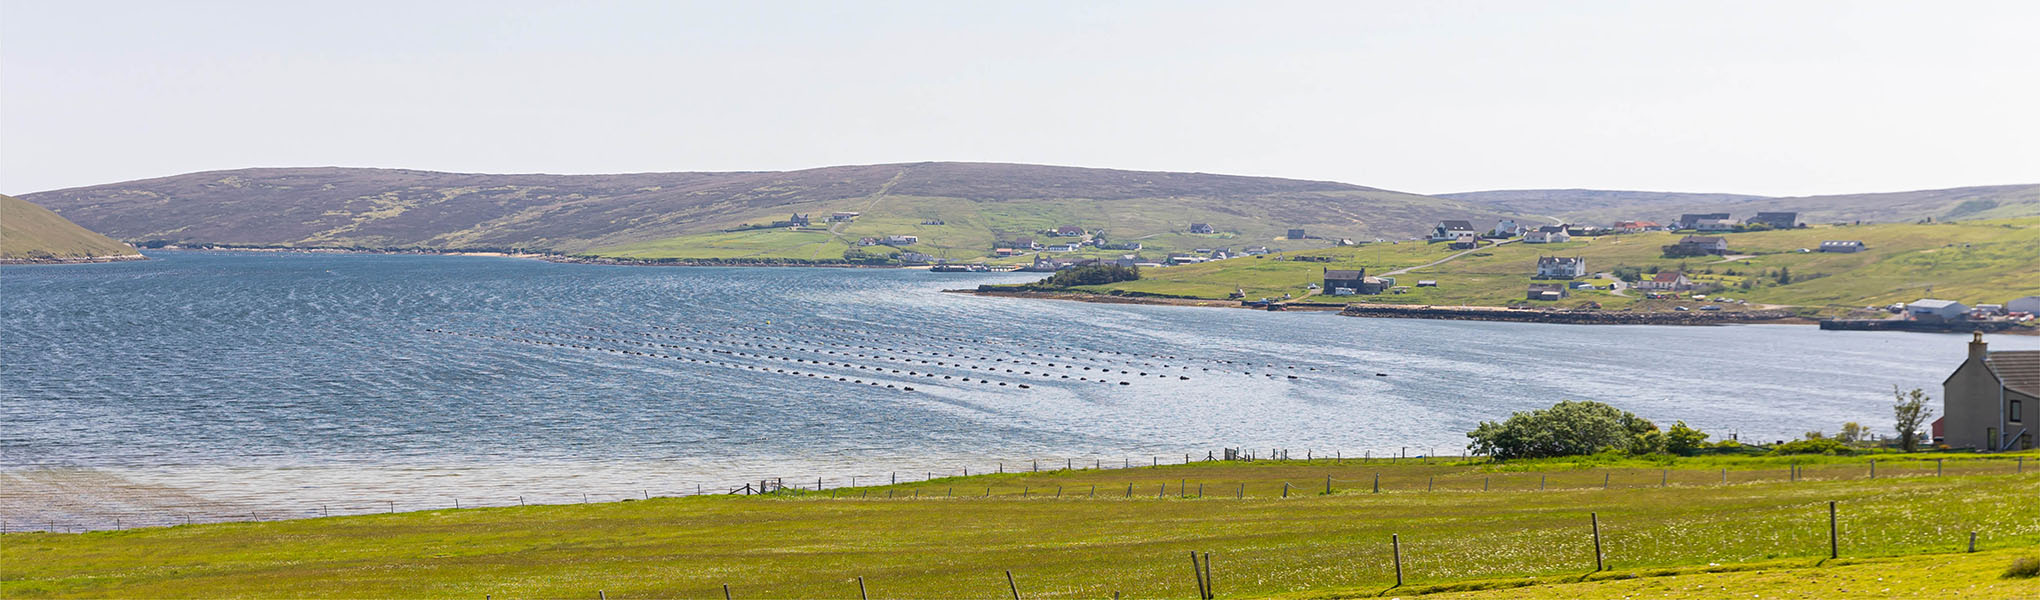 Panoramic shot of Shetland mussel farms